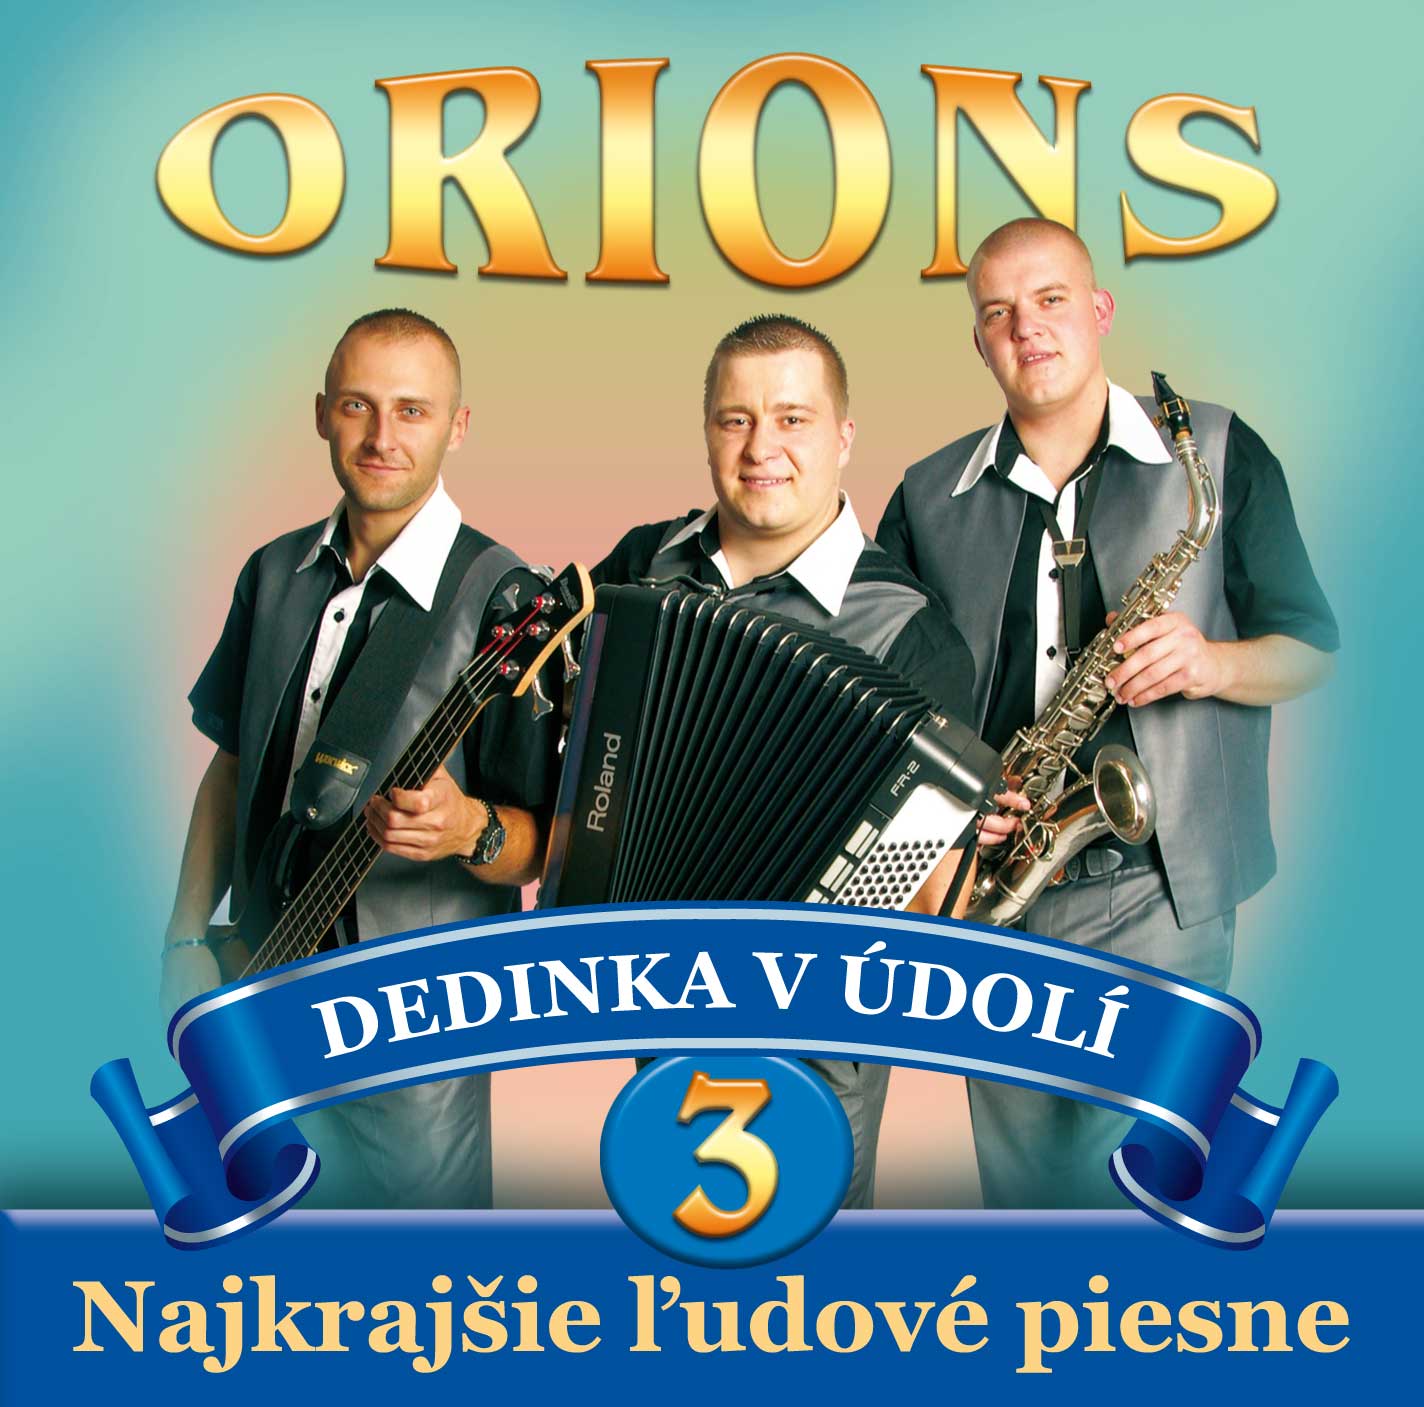 Orions - Dedinka v údolí, Najkrajšie ľudové piesne č.3 (cd)